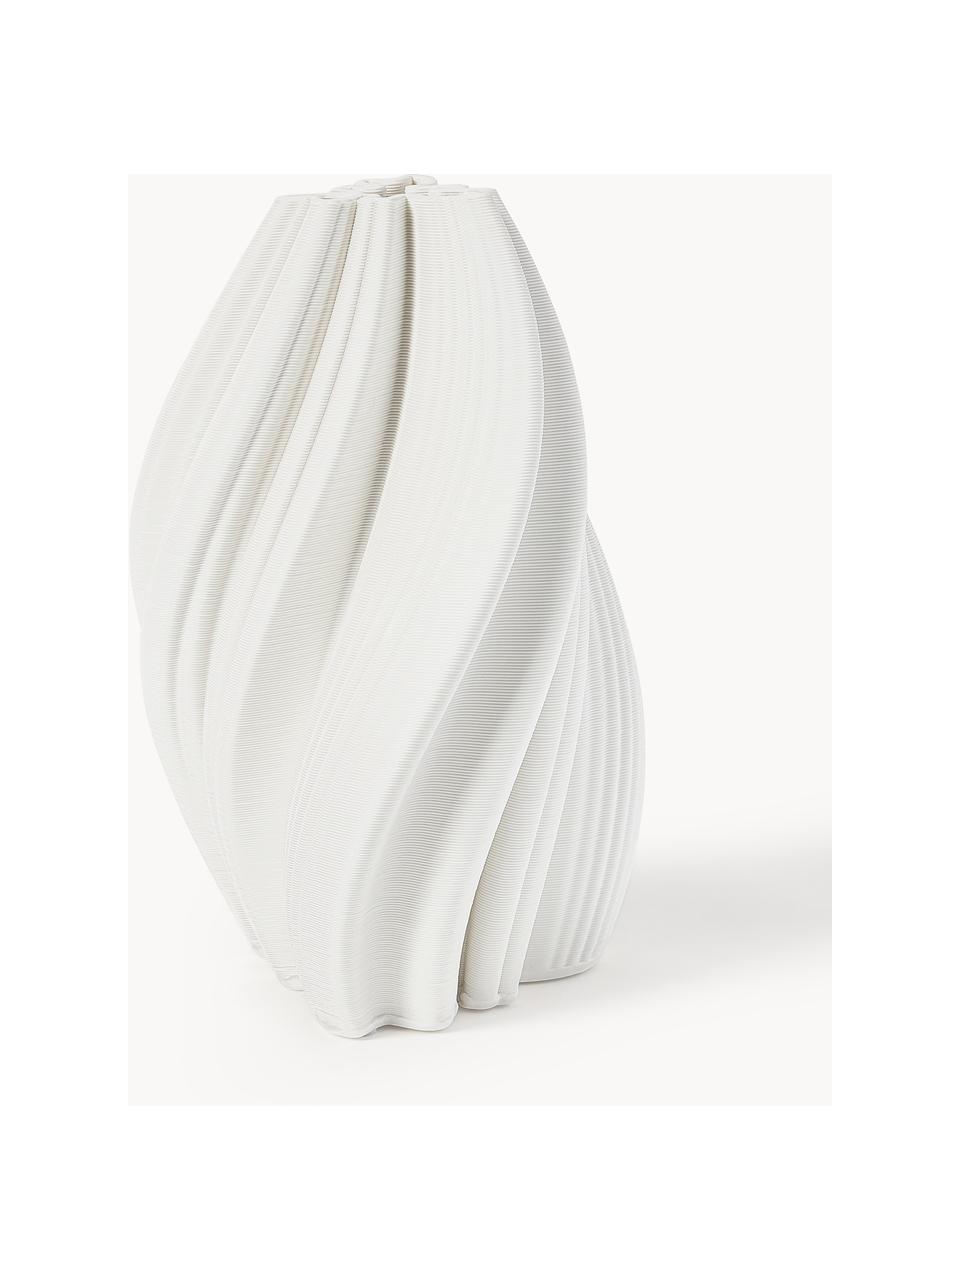 3D tištěná váza z porcelánu Melody, Porcelán, Bílá, Ø 18 cm, V 29 cm